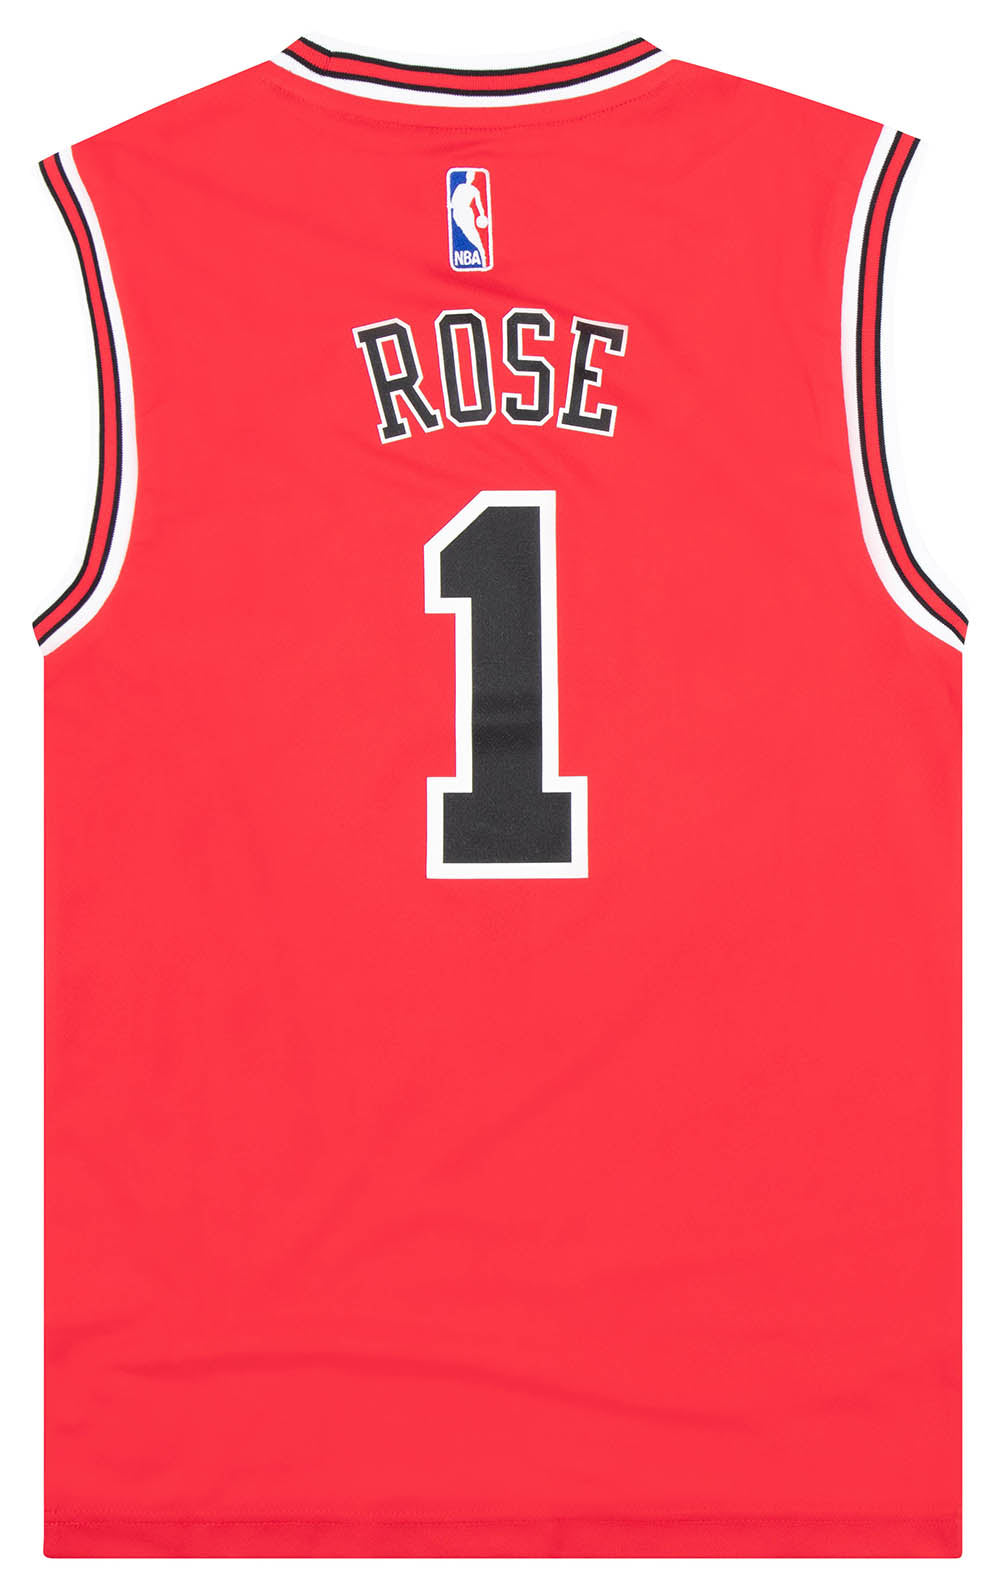 人気商品 美品 adidas BULLS ゲームシャツ ROSE 1 メンズM アディダス シカゴブルズ NBA バスケット レッド スケー